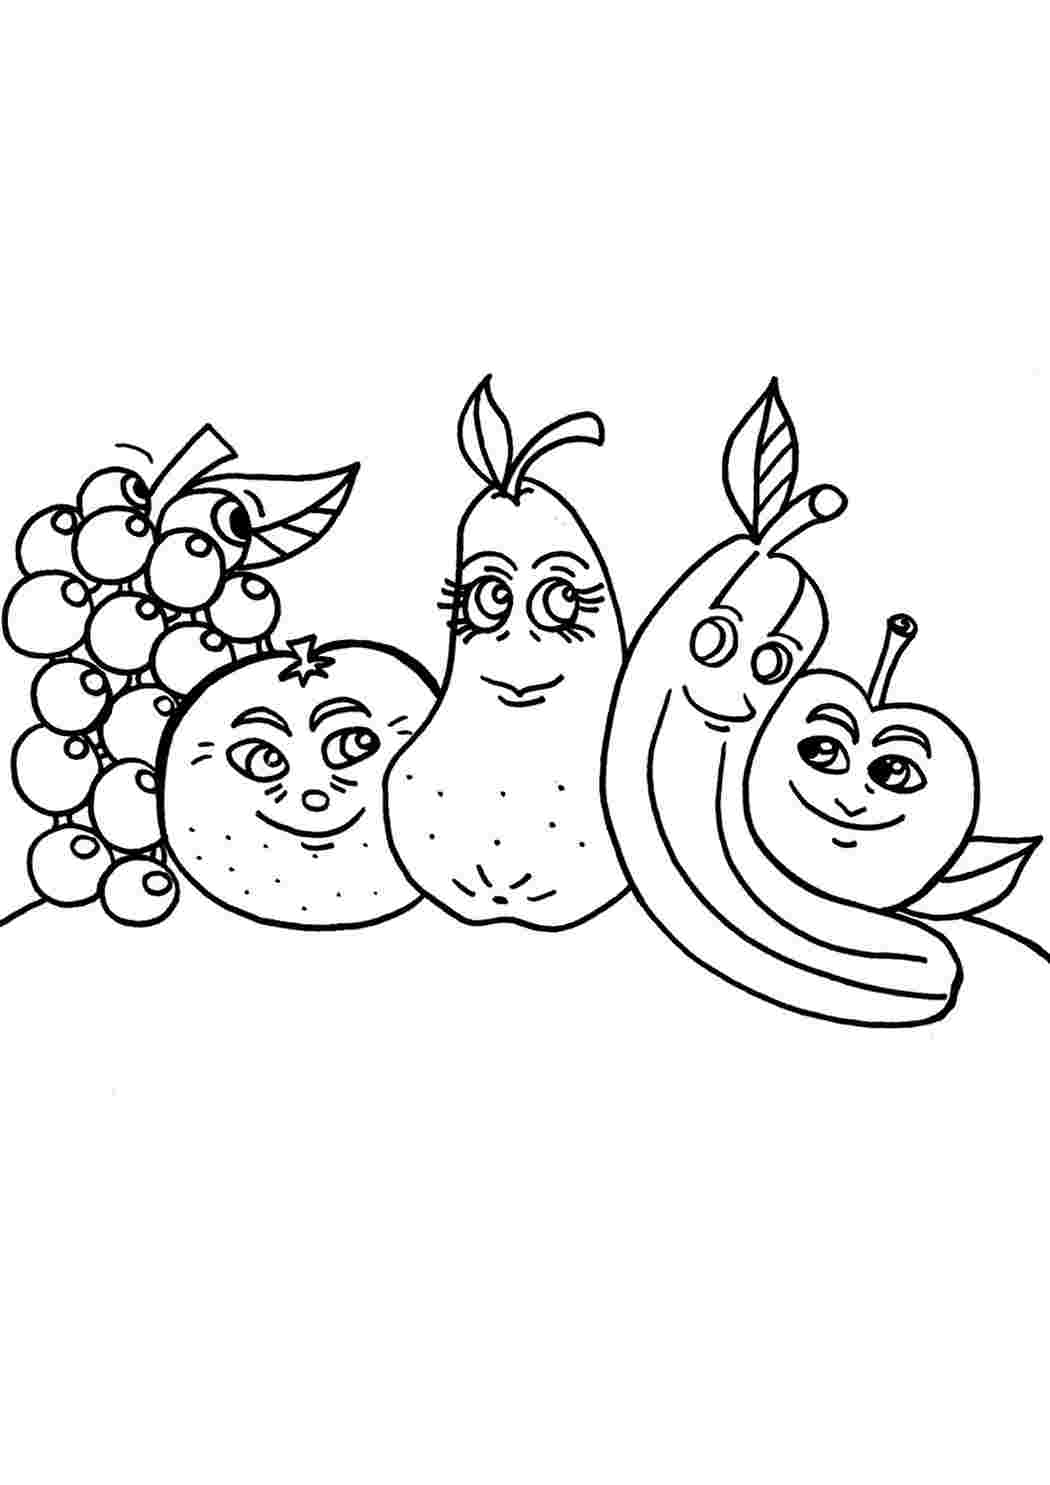 картинки овощей и фруктов для раскрашивания